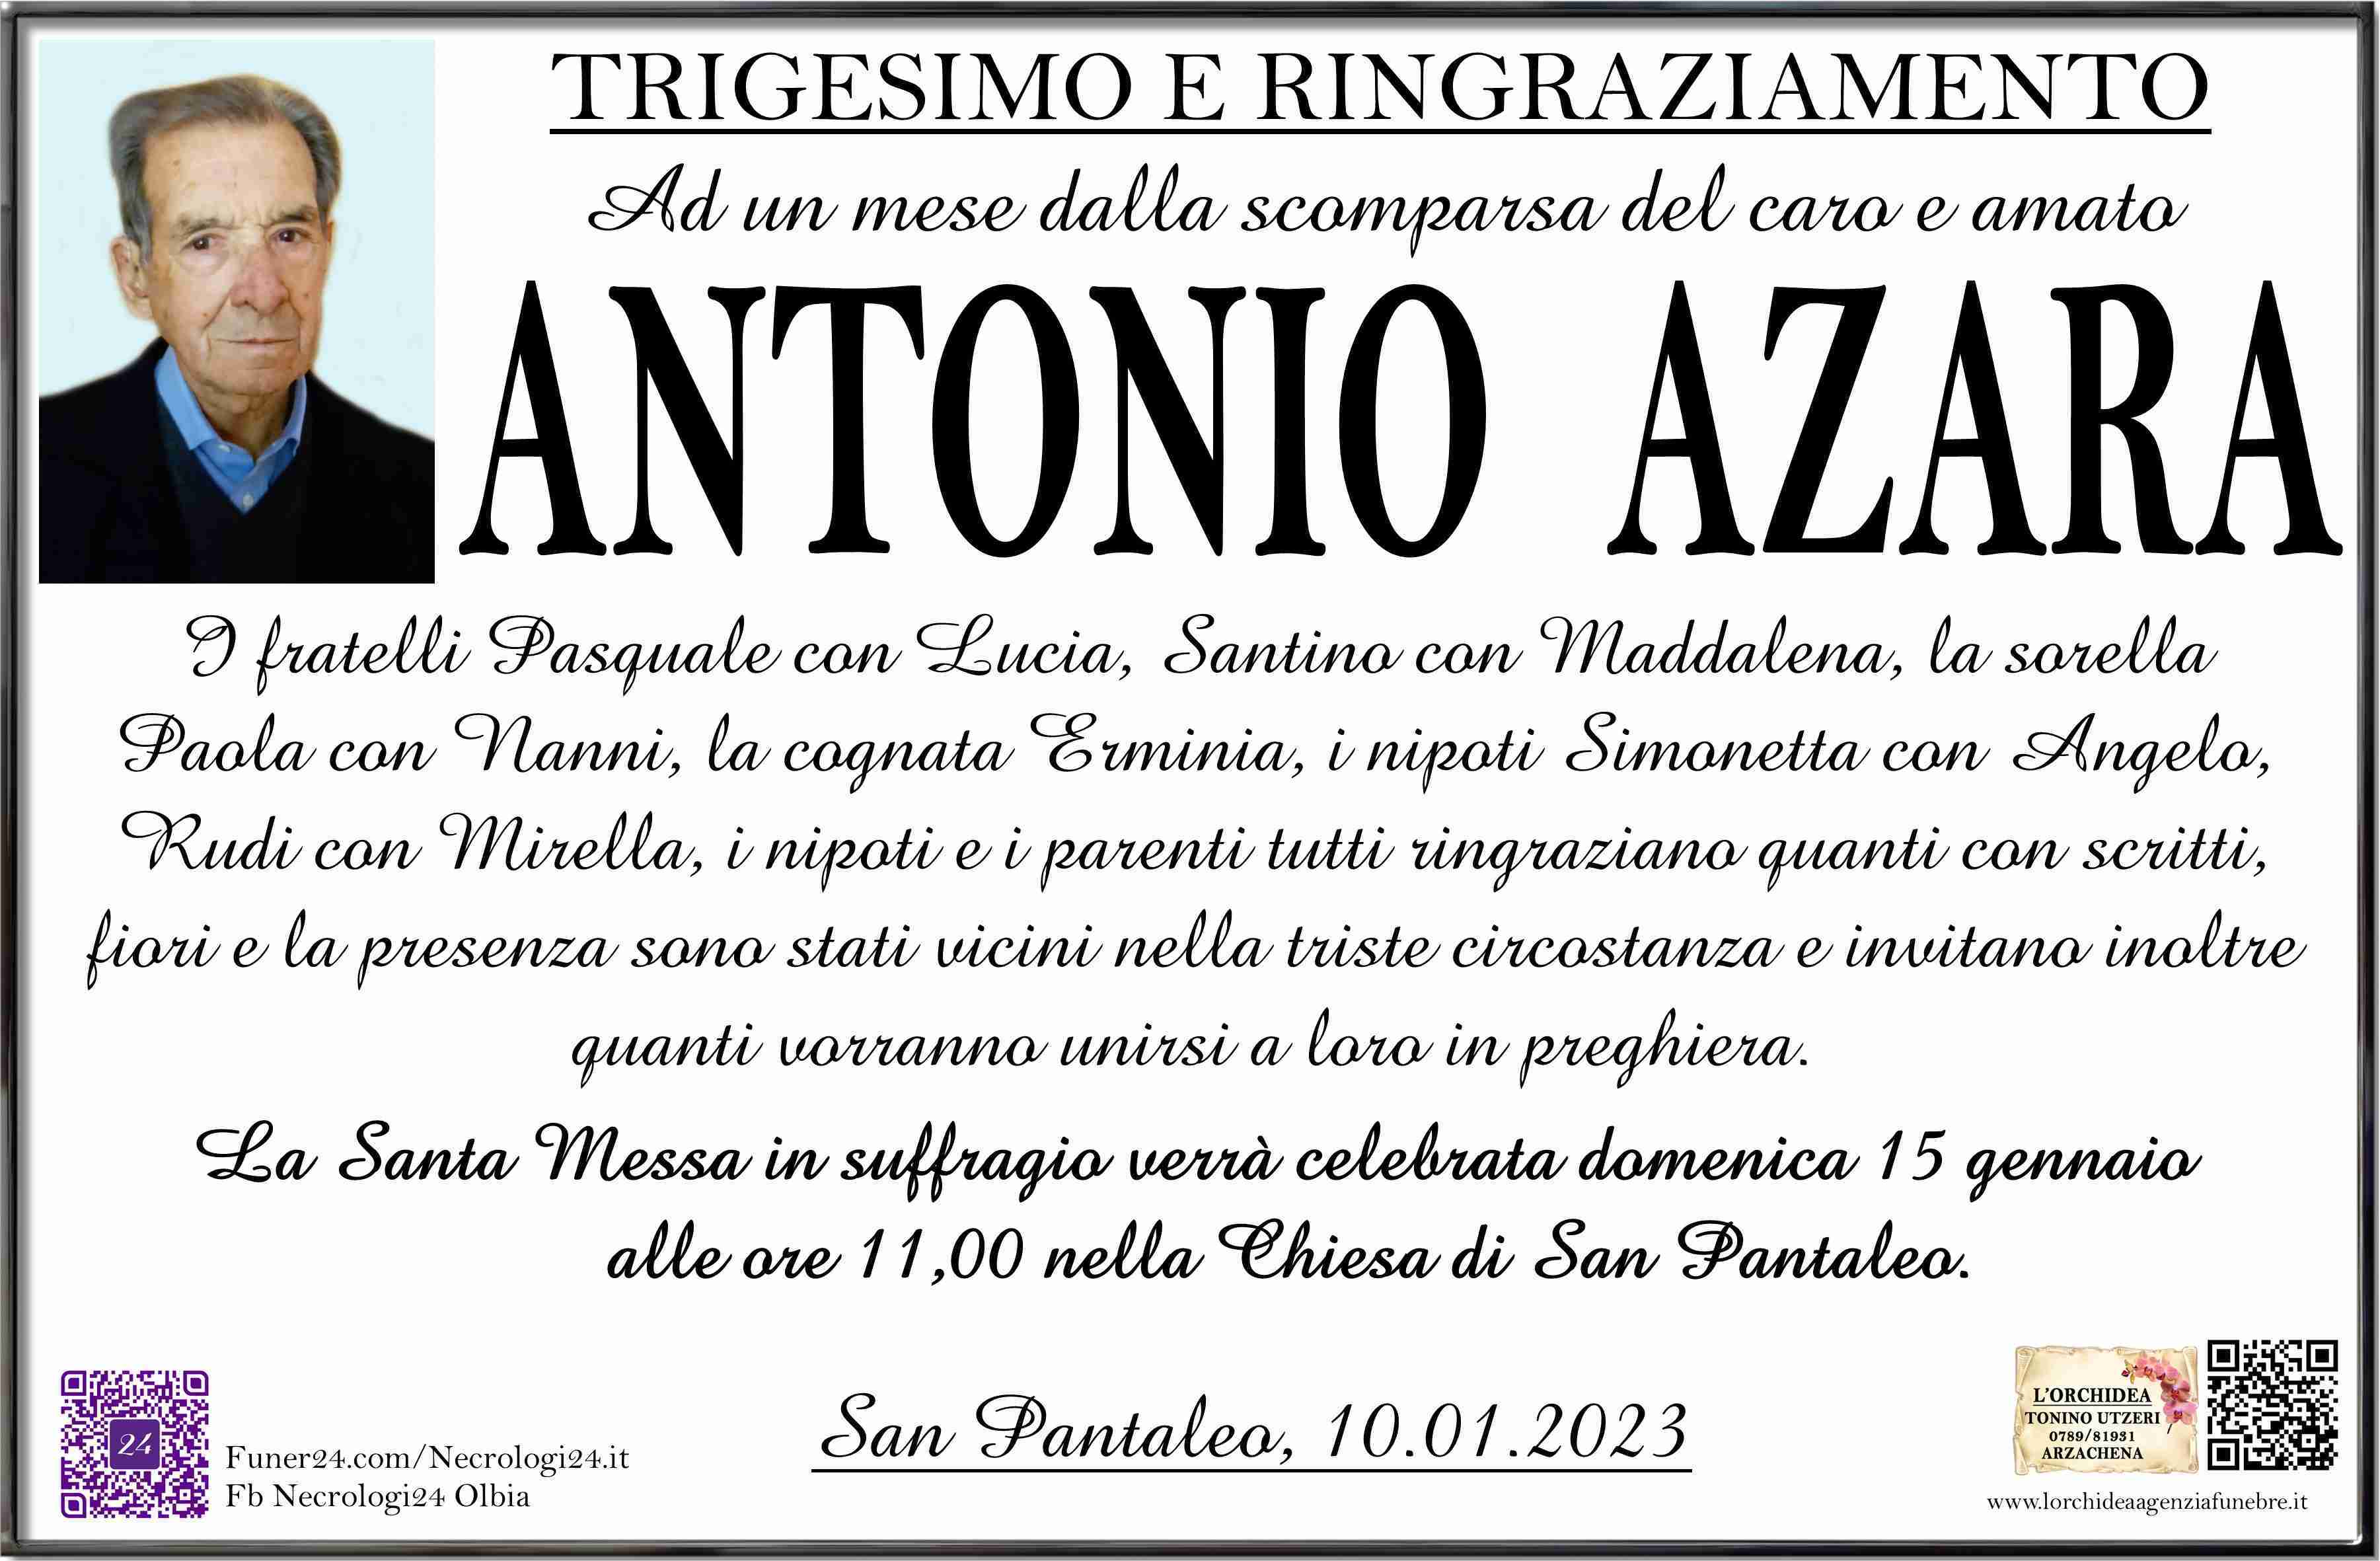 Antonio Azara